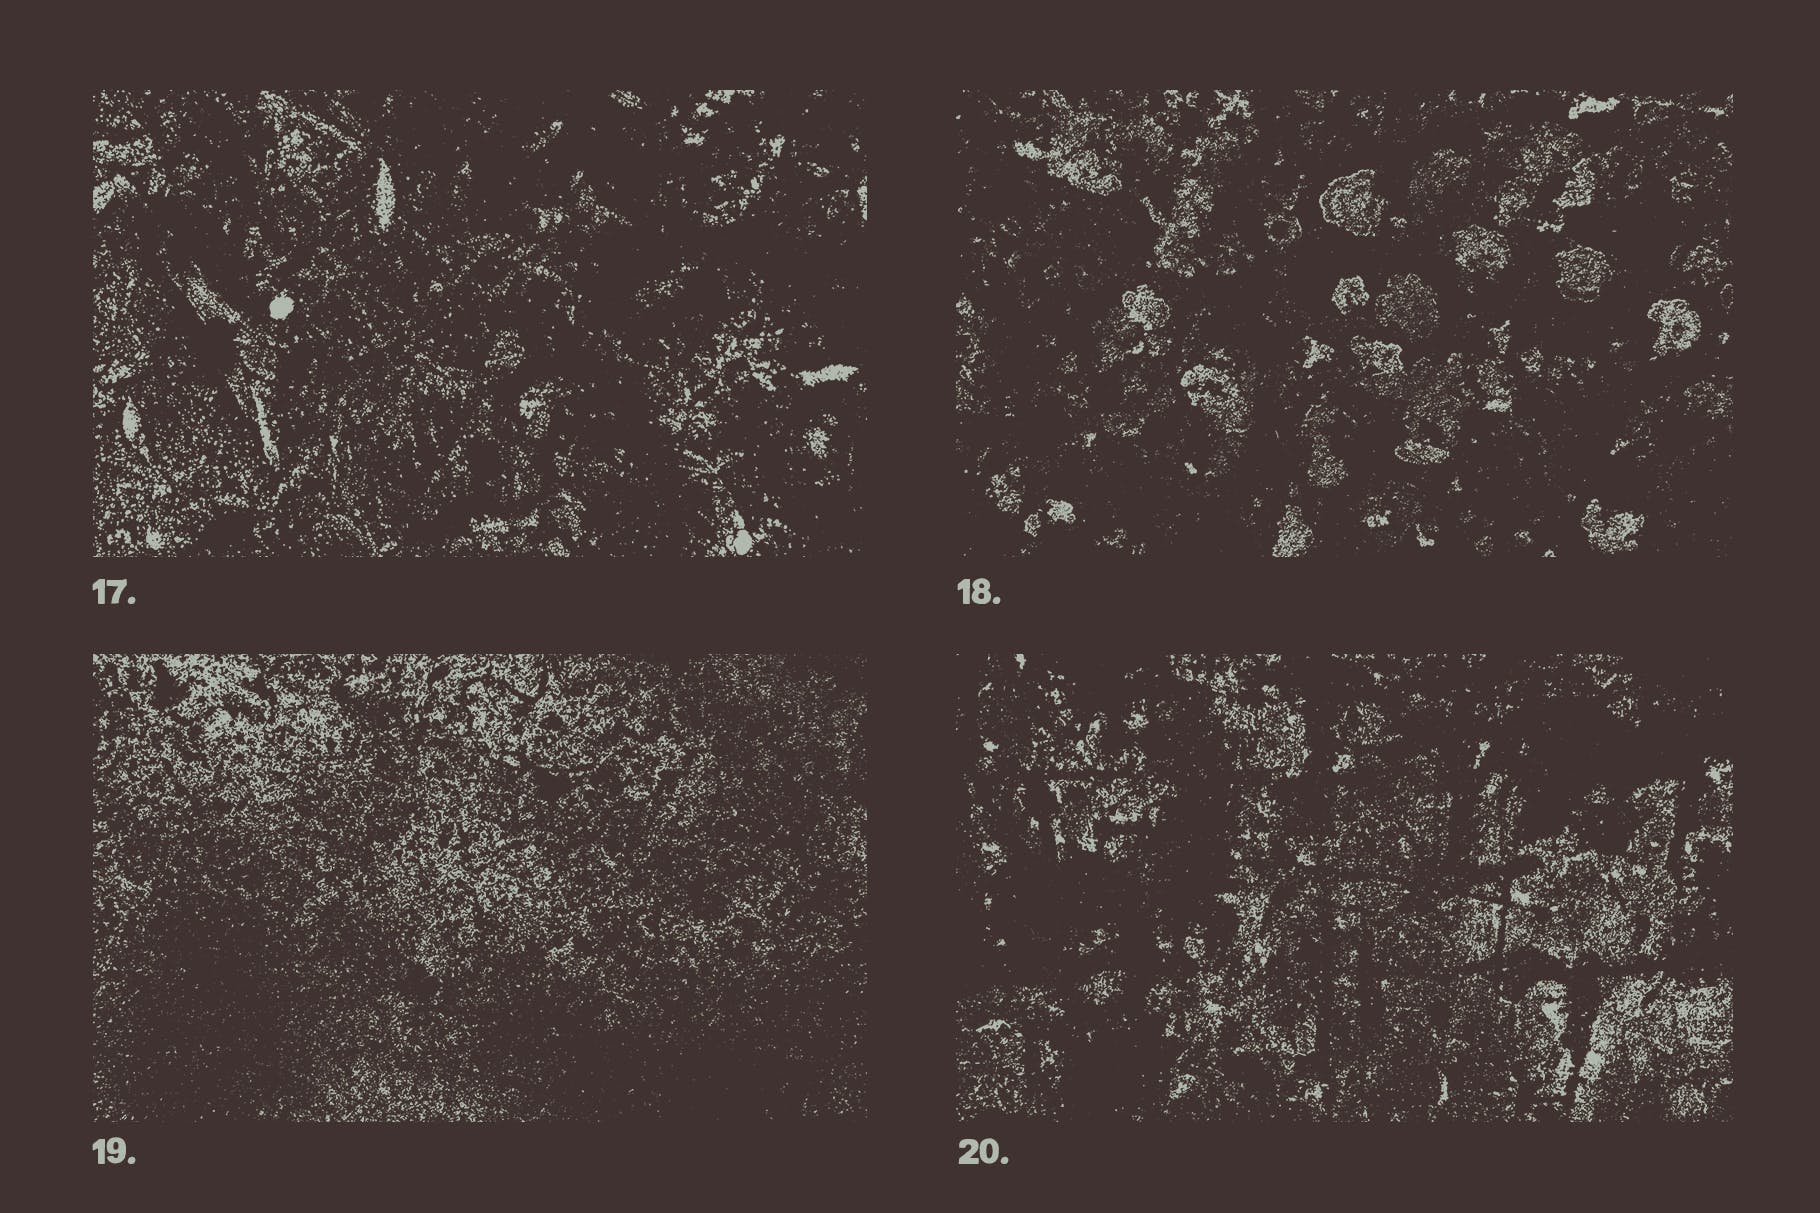 12个污迹斑迹做旧处理矢量纹理背景素材 Vector Grunge Textures x12 Vol2插图(4)